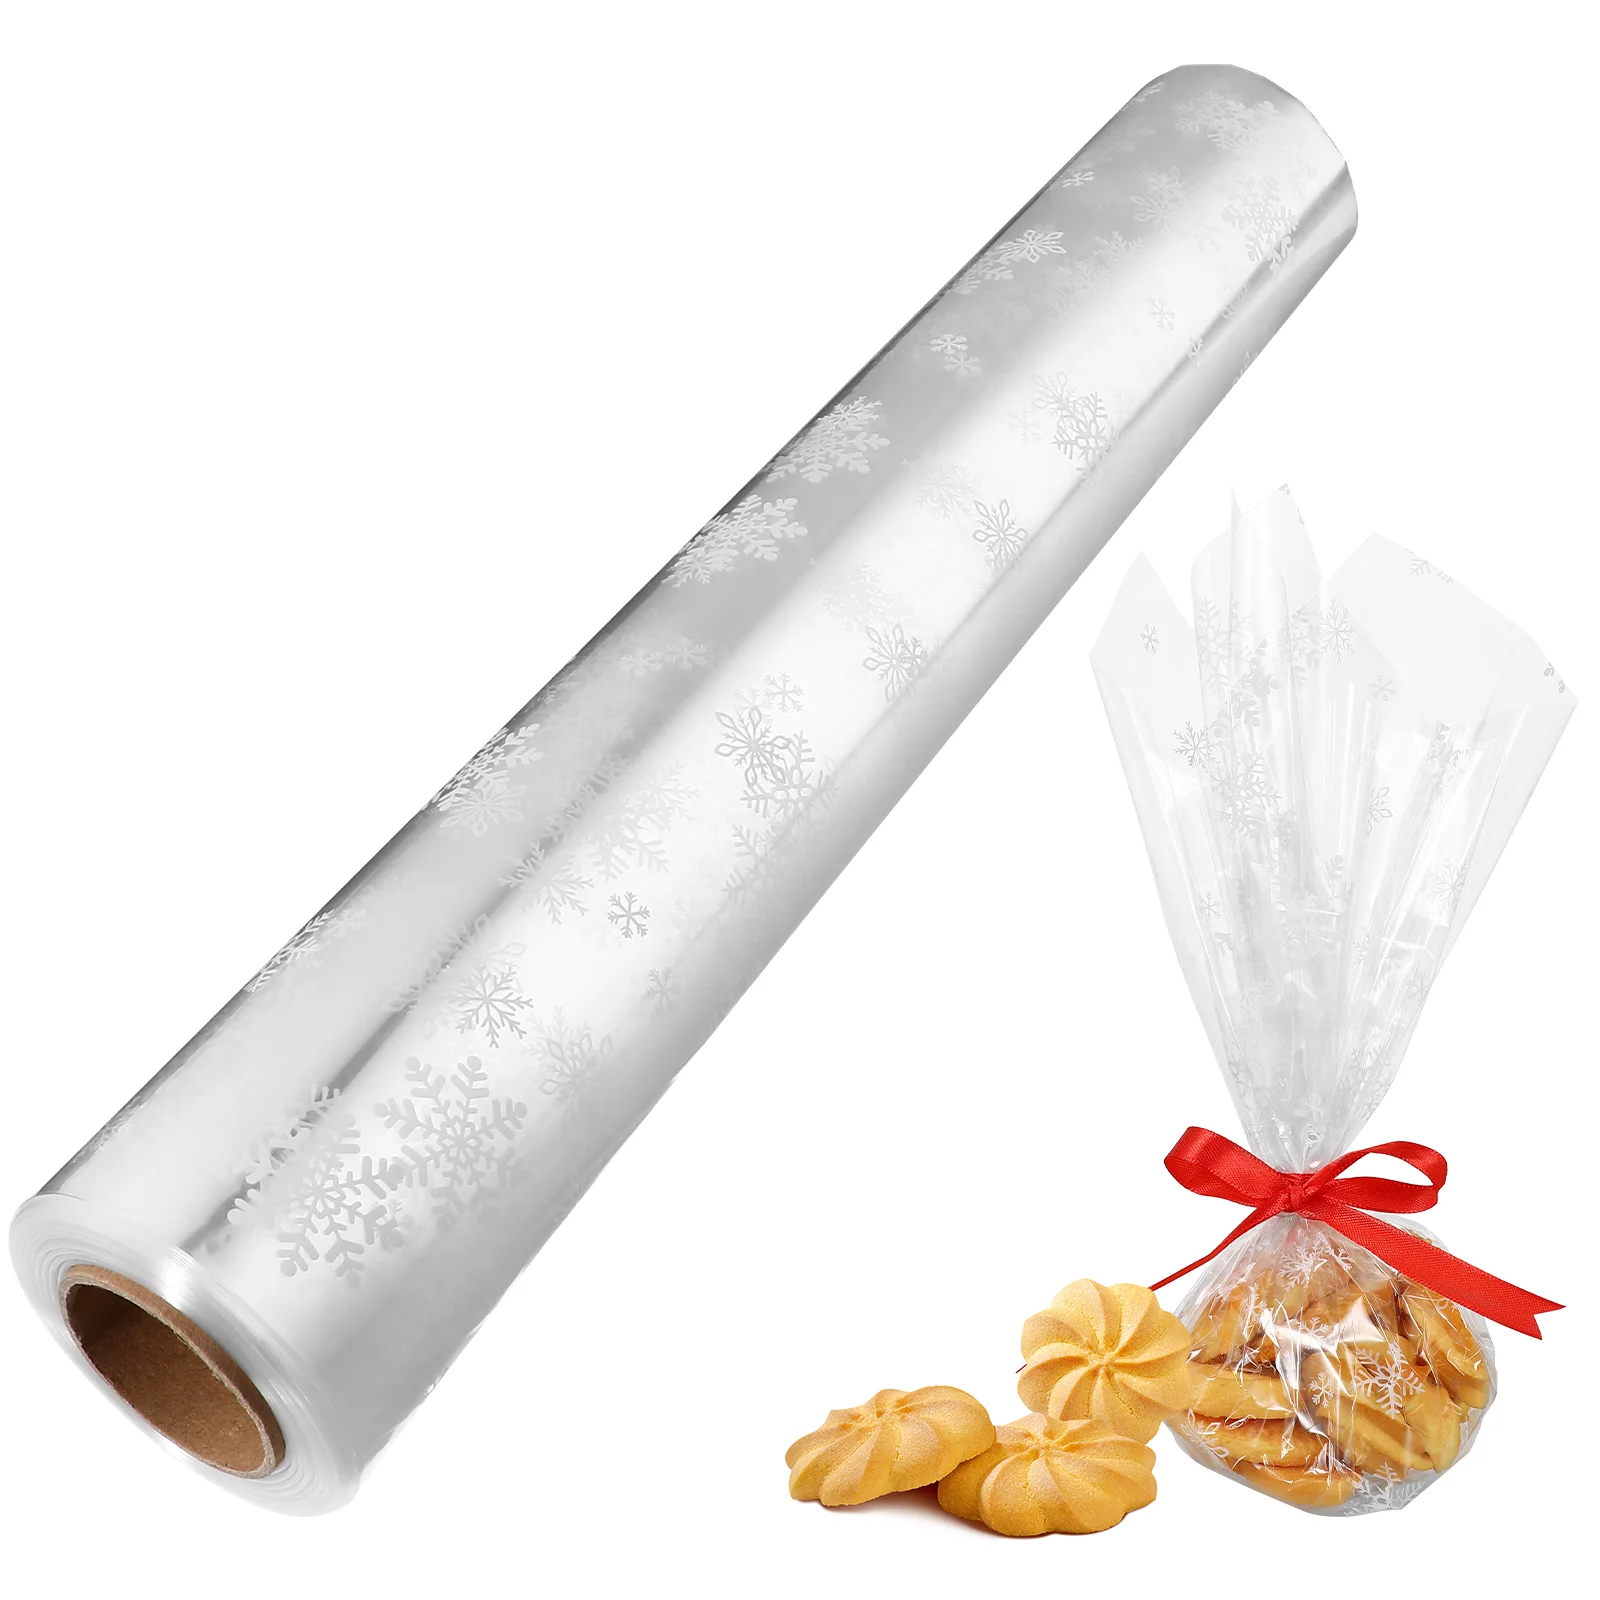 

1 шт. целлофановые пакеты для подарков Рождественская упаковочная бумага рулон 3 мил толщина бумага для упаковки подарков прозрачная целлофановая бумага для